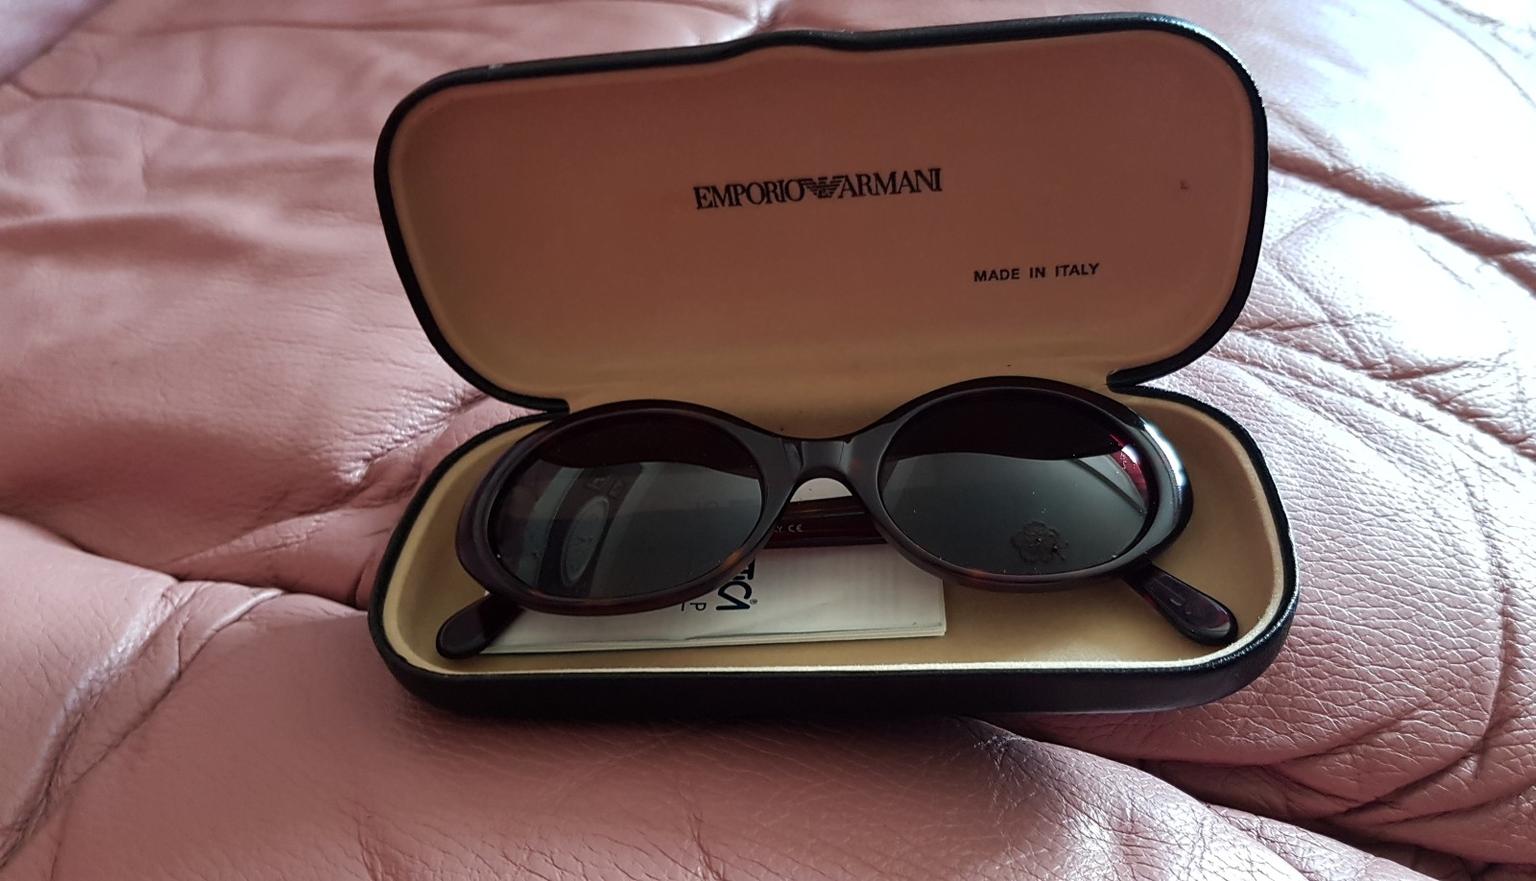 Vintage Emporio Armani sunglasses in 